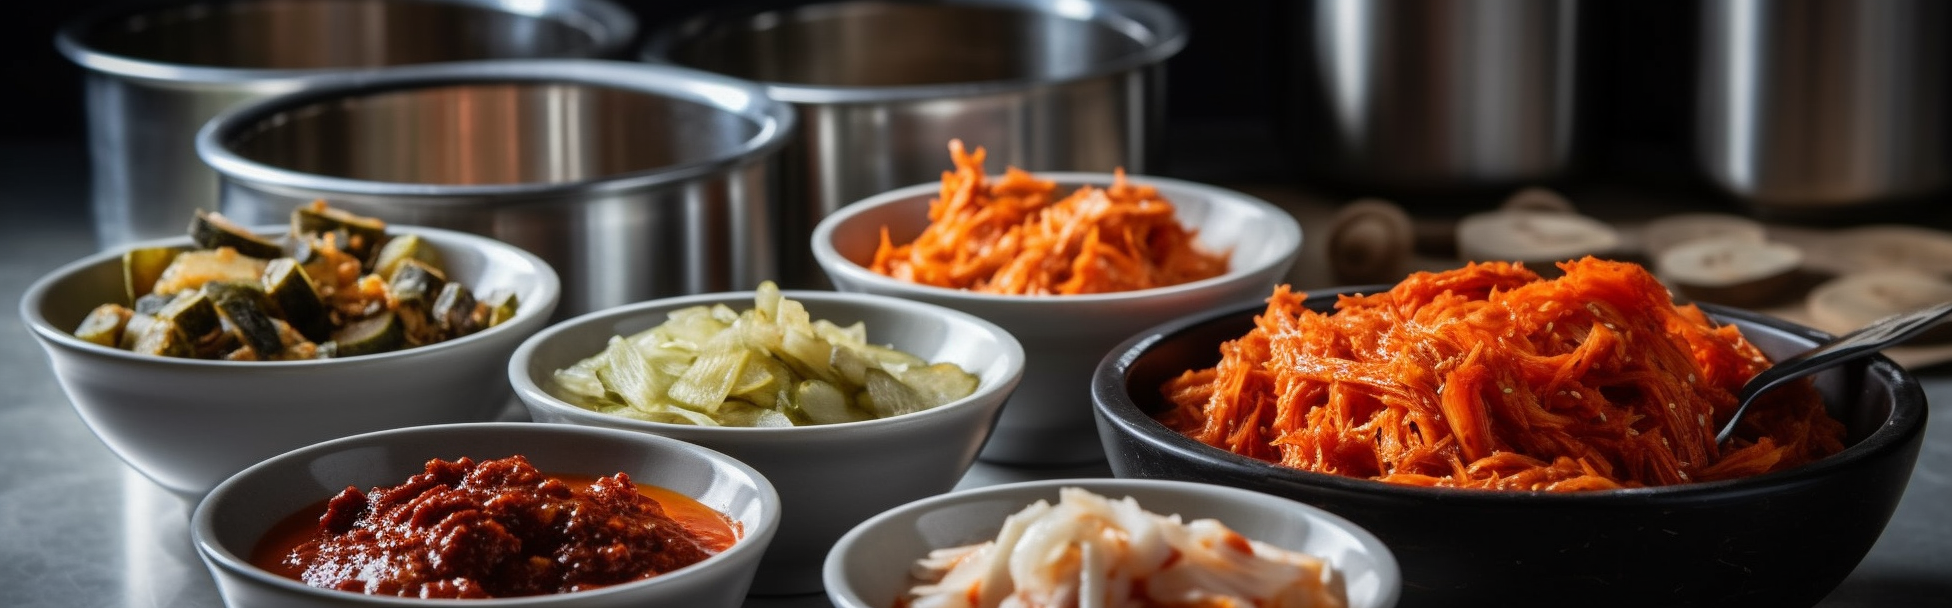 American Seoul: Eric Kim's Fresh New Take on Korean Cuisine